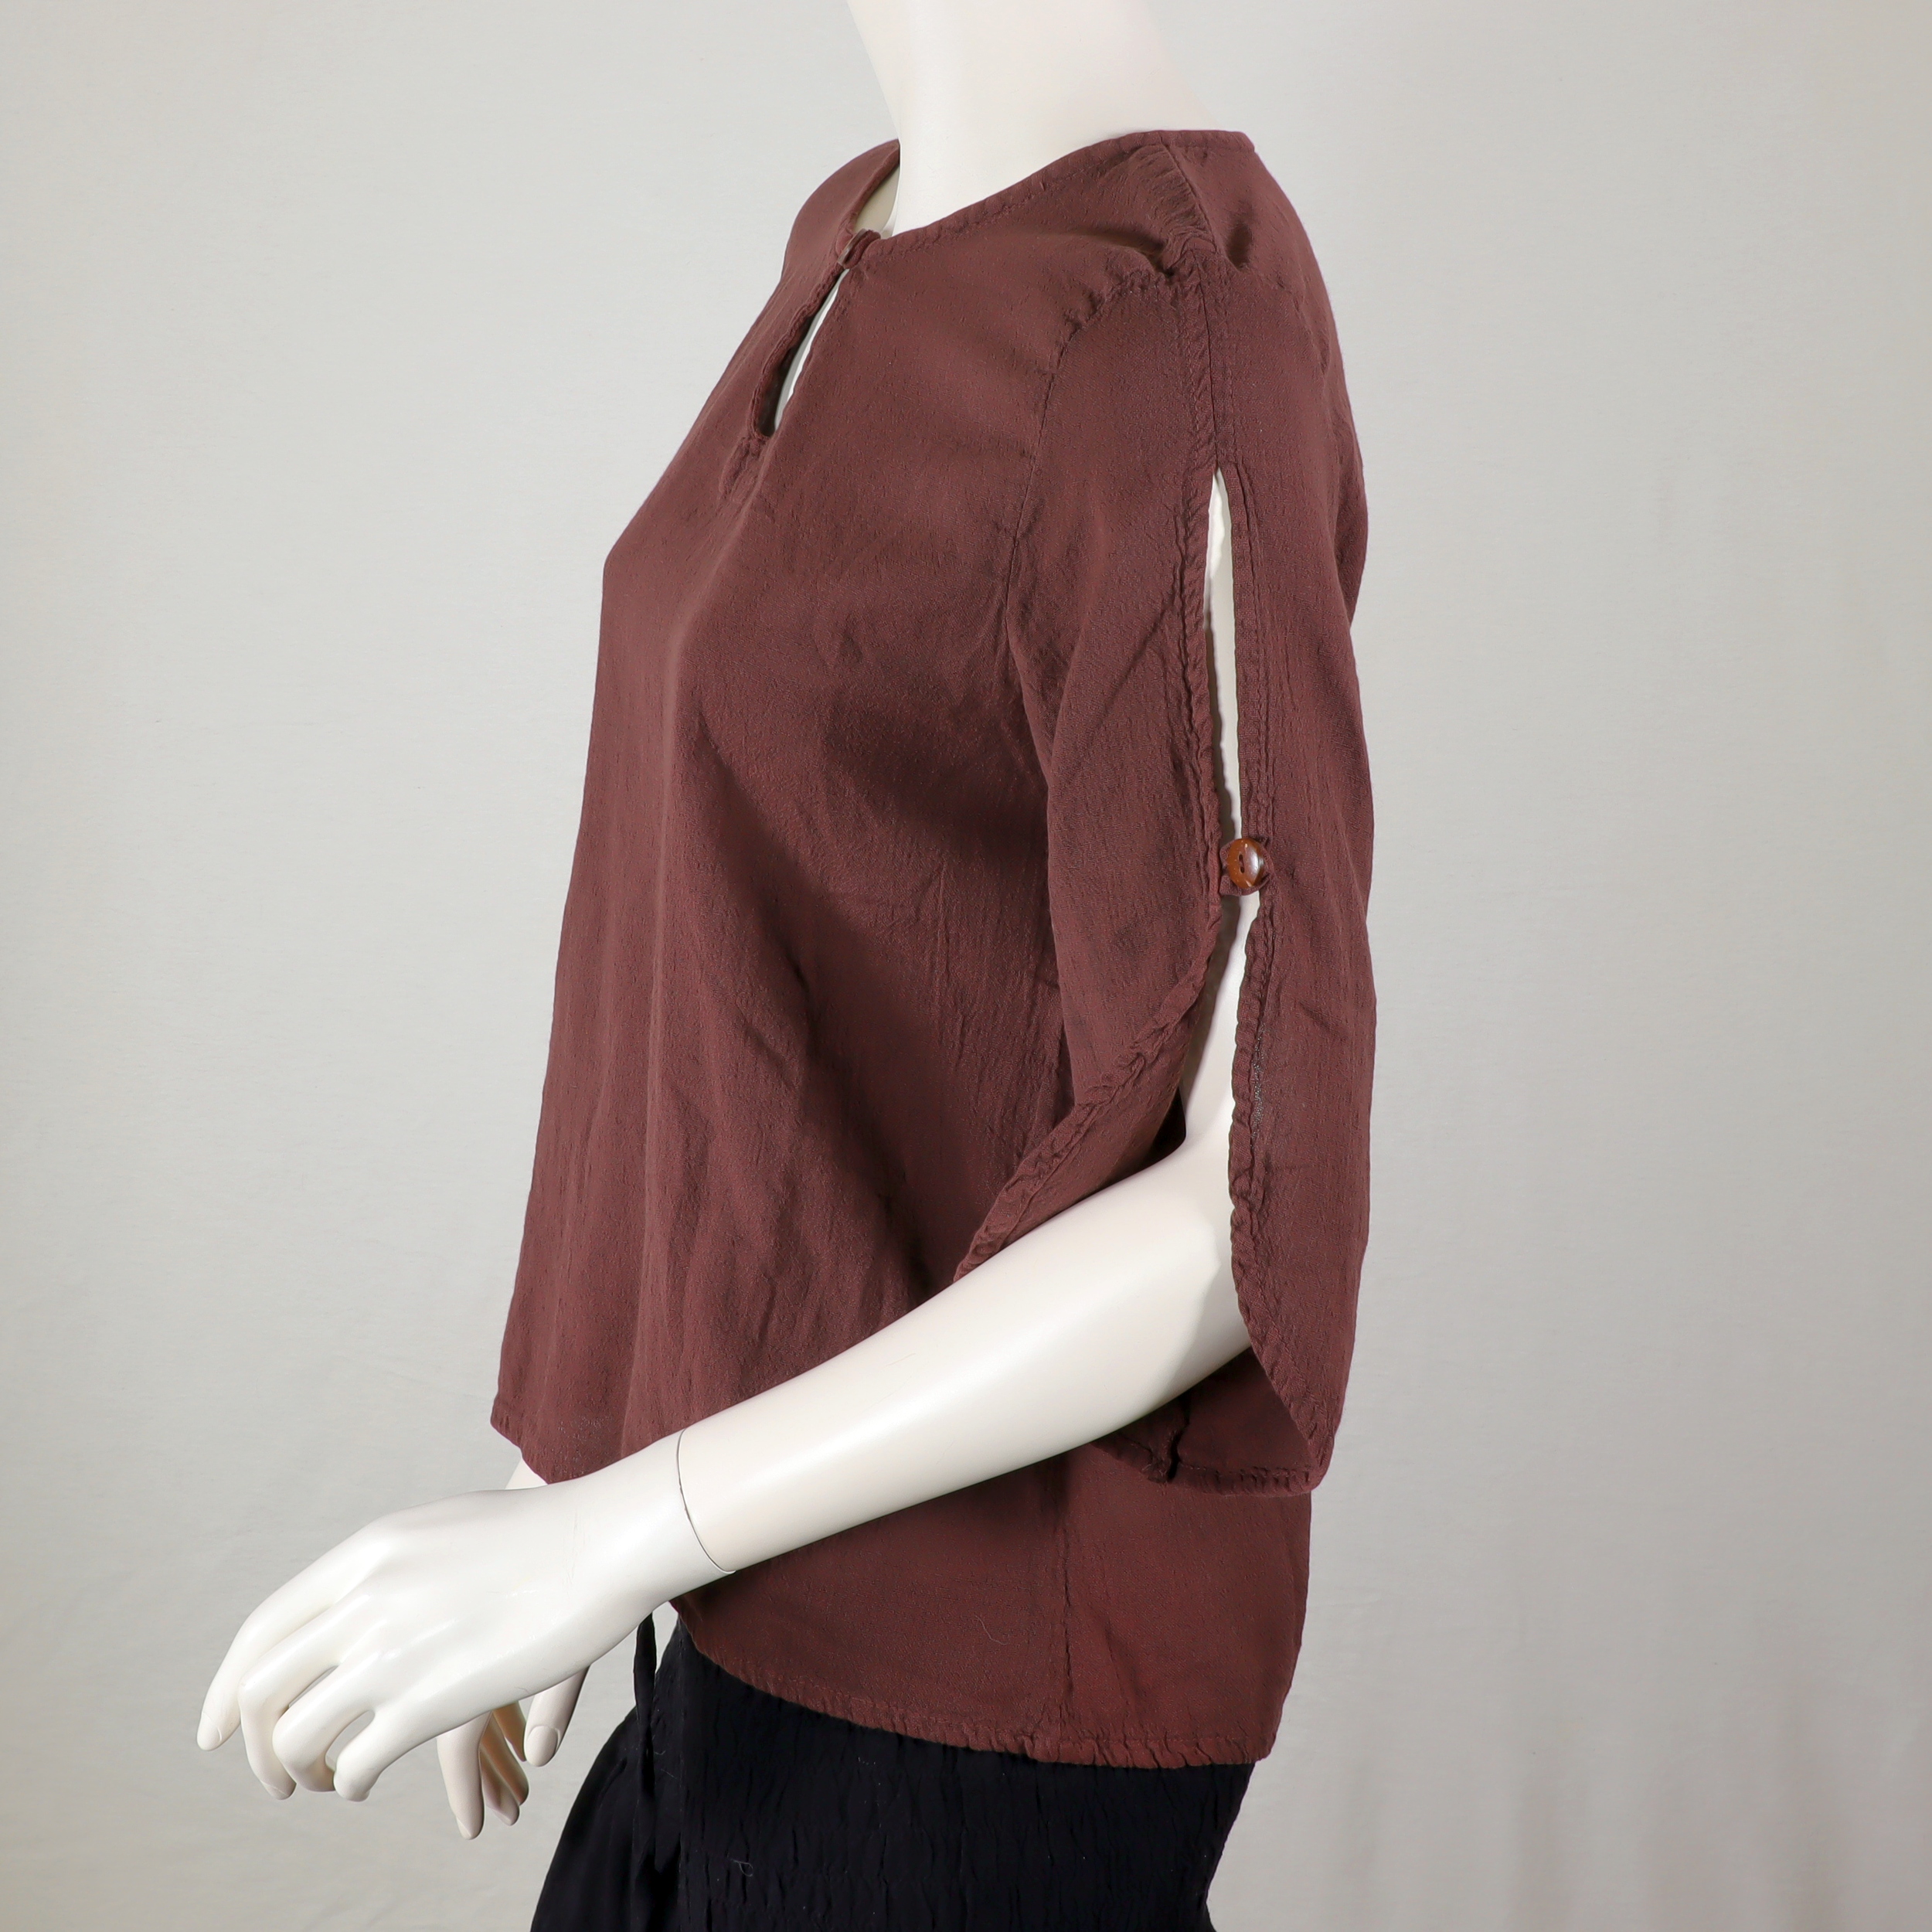 Blusen-Top aus leichter Baumwolle mit luftig, lockeren 3/4-Ärmeln, Knöpfe aus Kokosnuss, luftig, locker und elegant